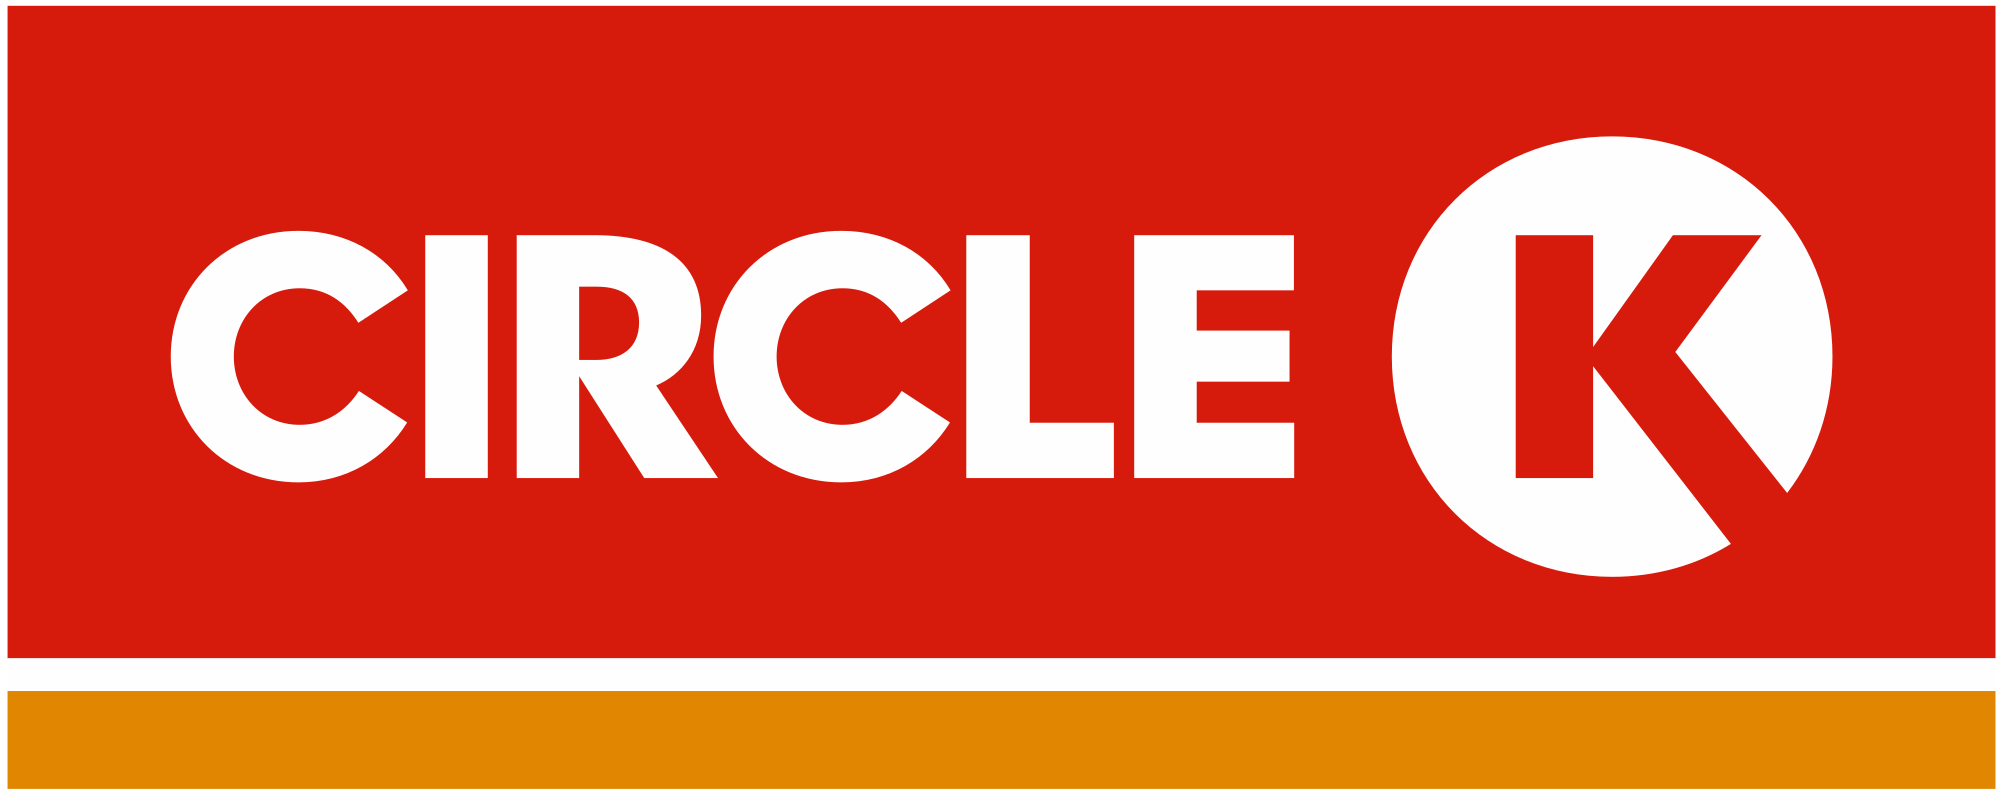 Circle_K_logo_2016.svg